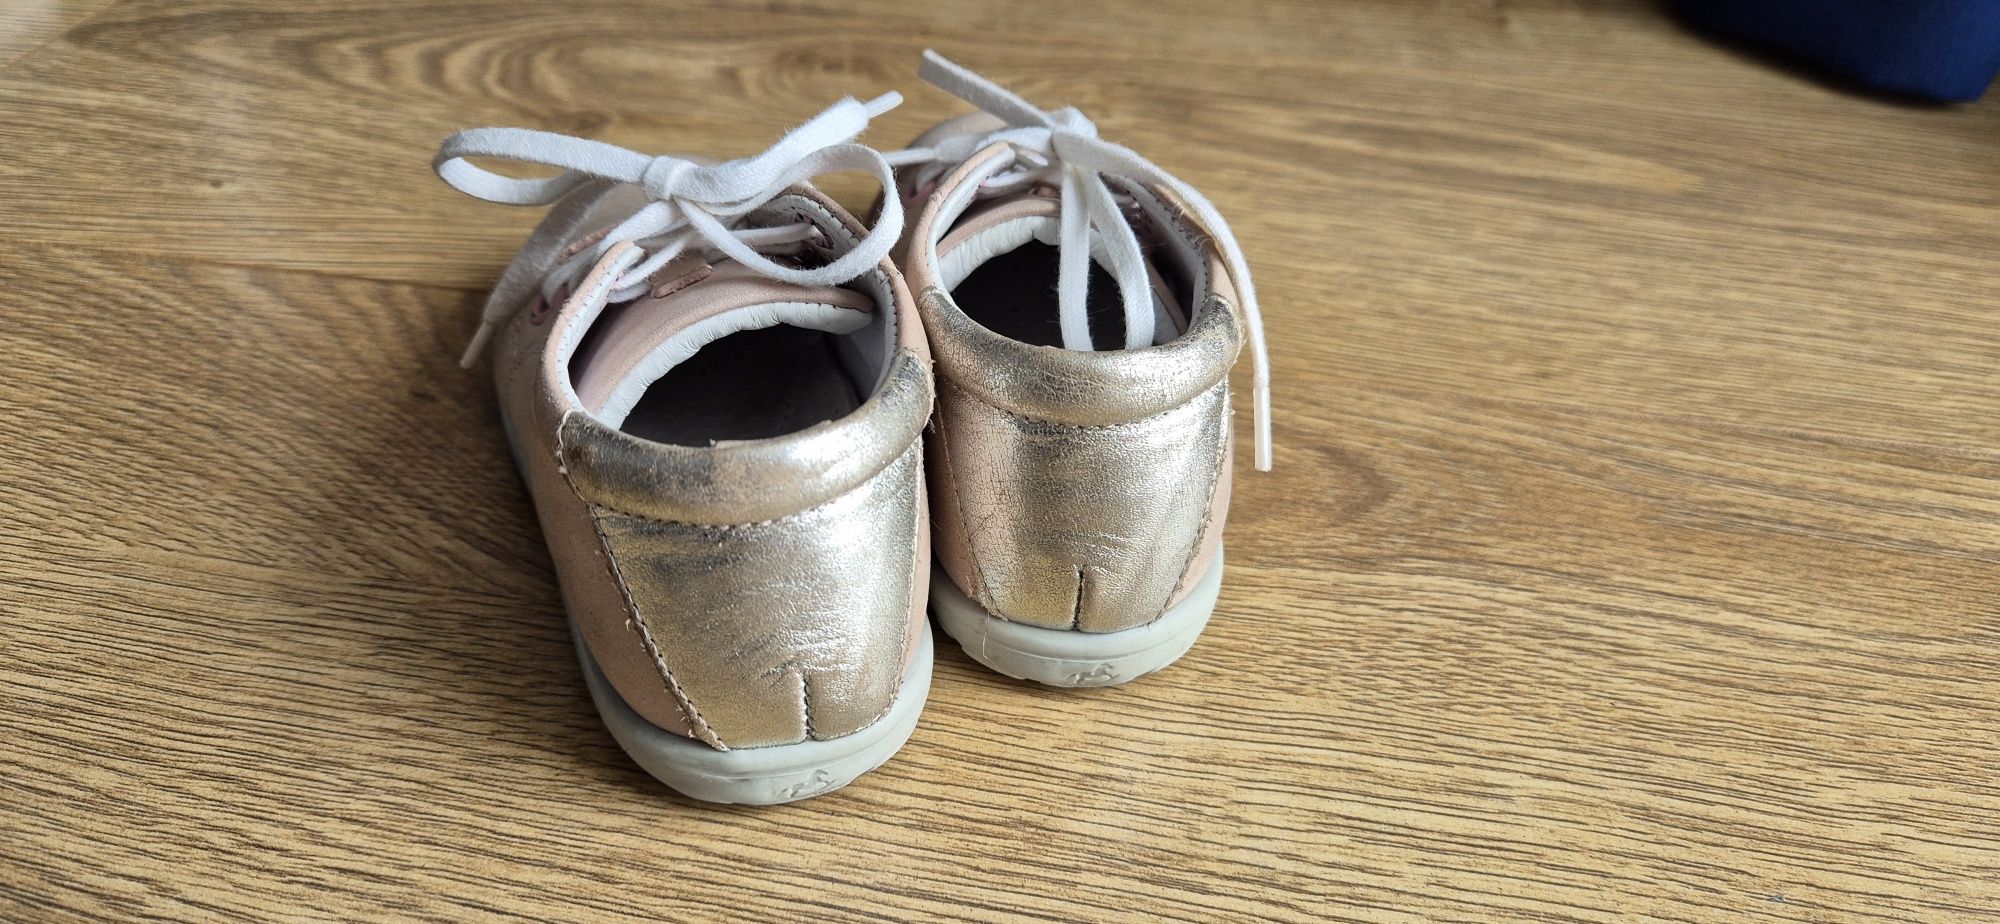 Emel emelki buty dziecięce skórzane roczki 21